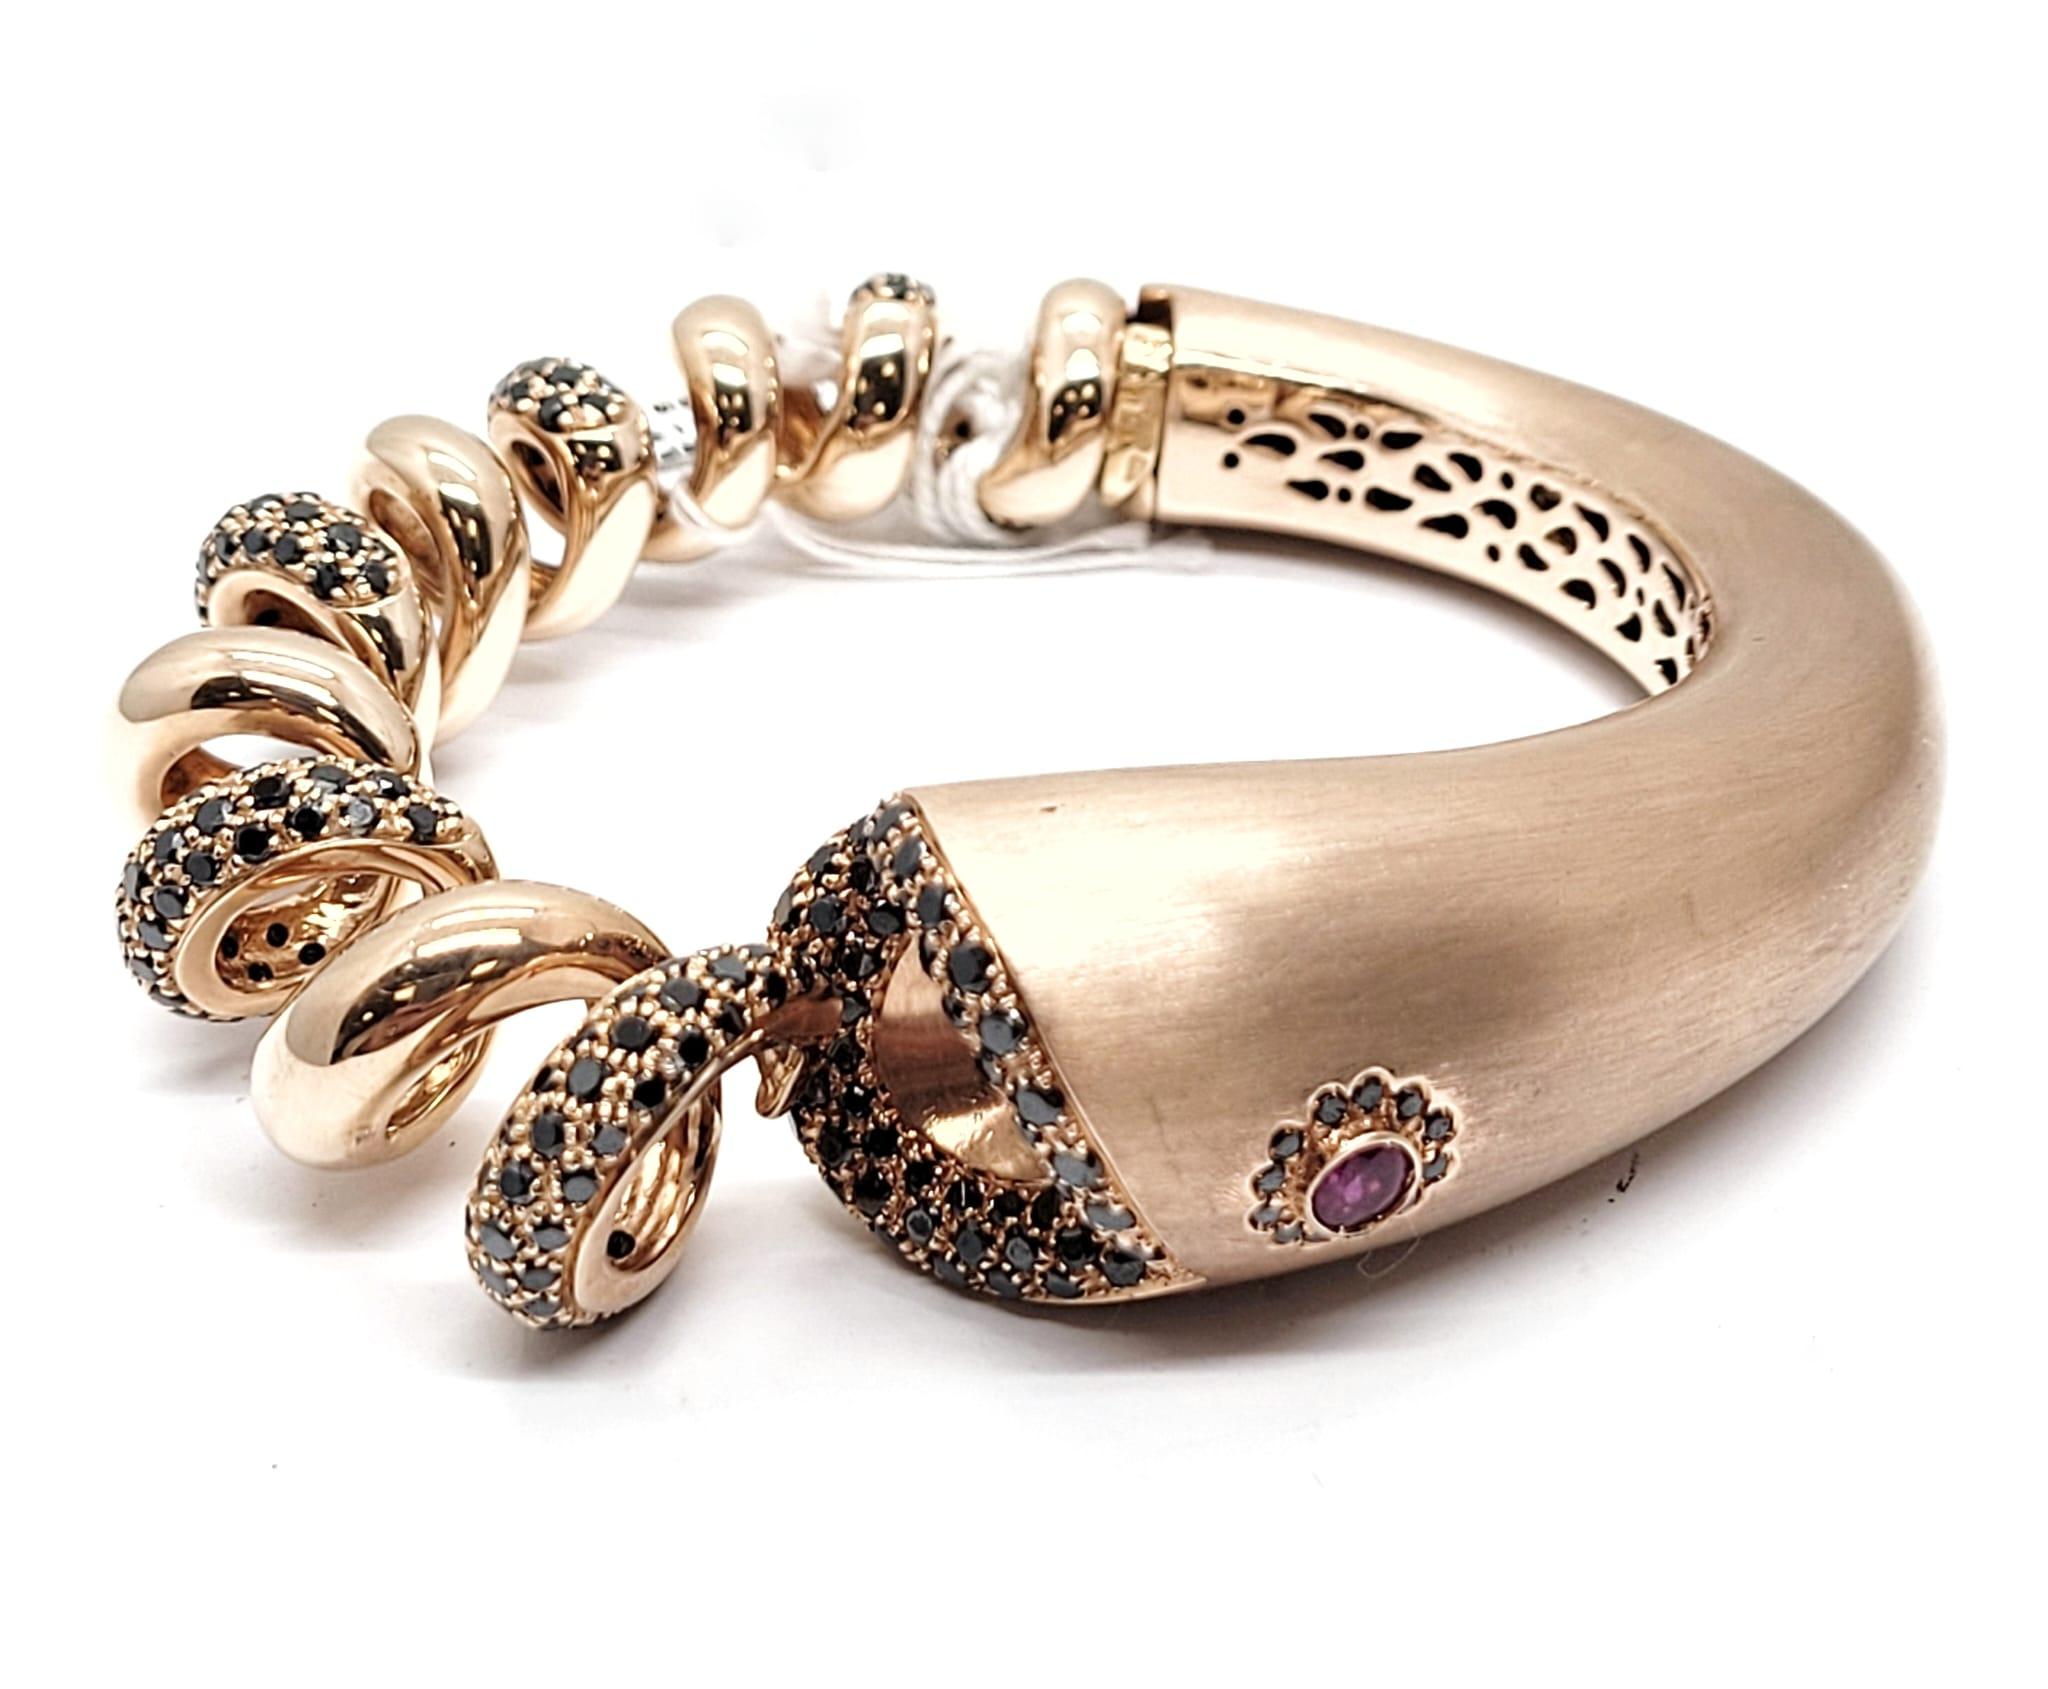 Andreoli, bracelet serpent en or rose 18 carats, rubis et diamants noirs

Ce bracelet présente les caractéristiques suivantes
- Œil